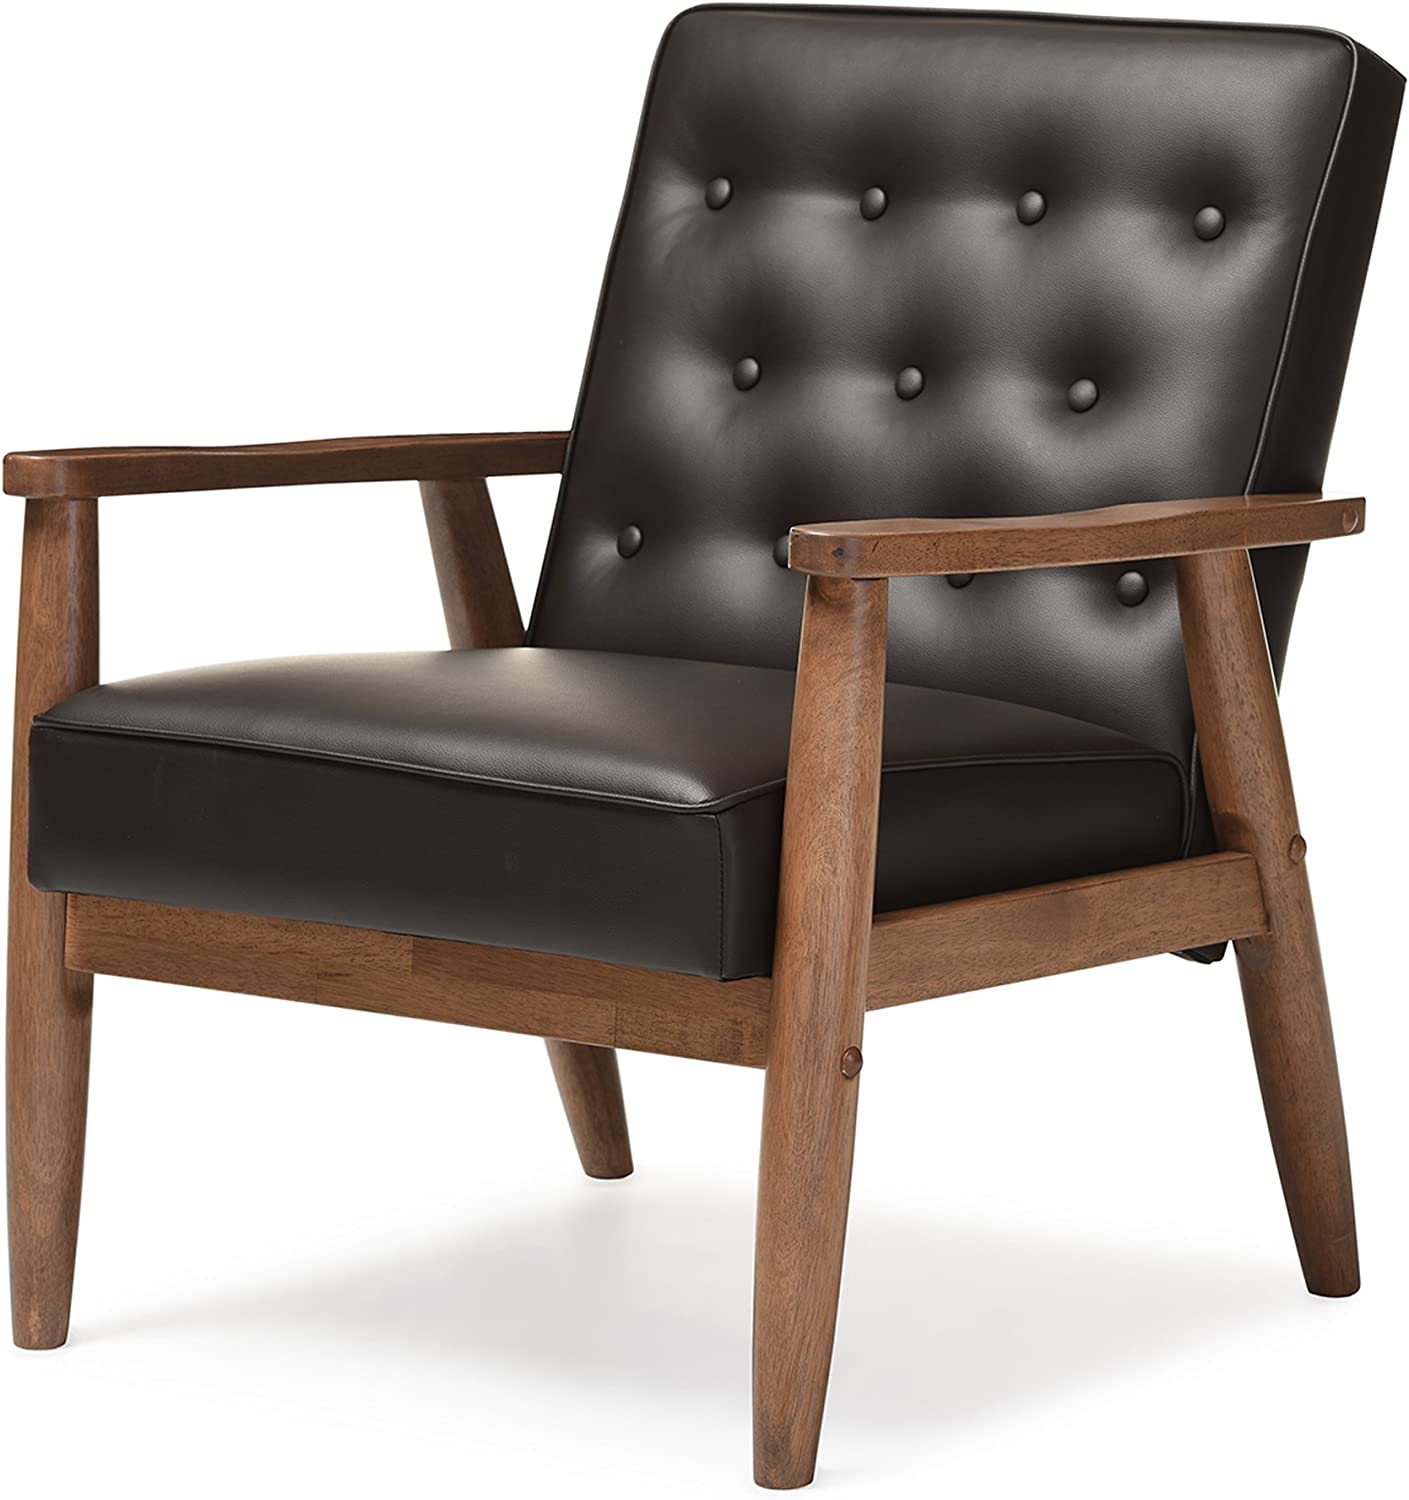 Baxton Studio BBT8013-Brown Chair armchairs, Brown